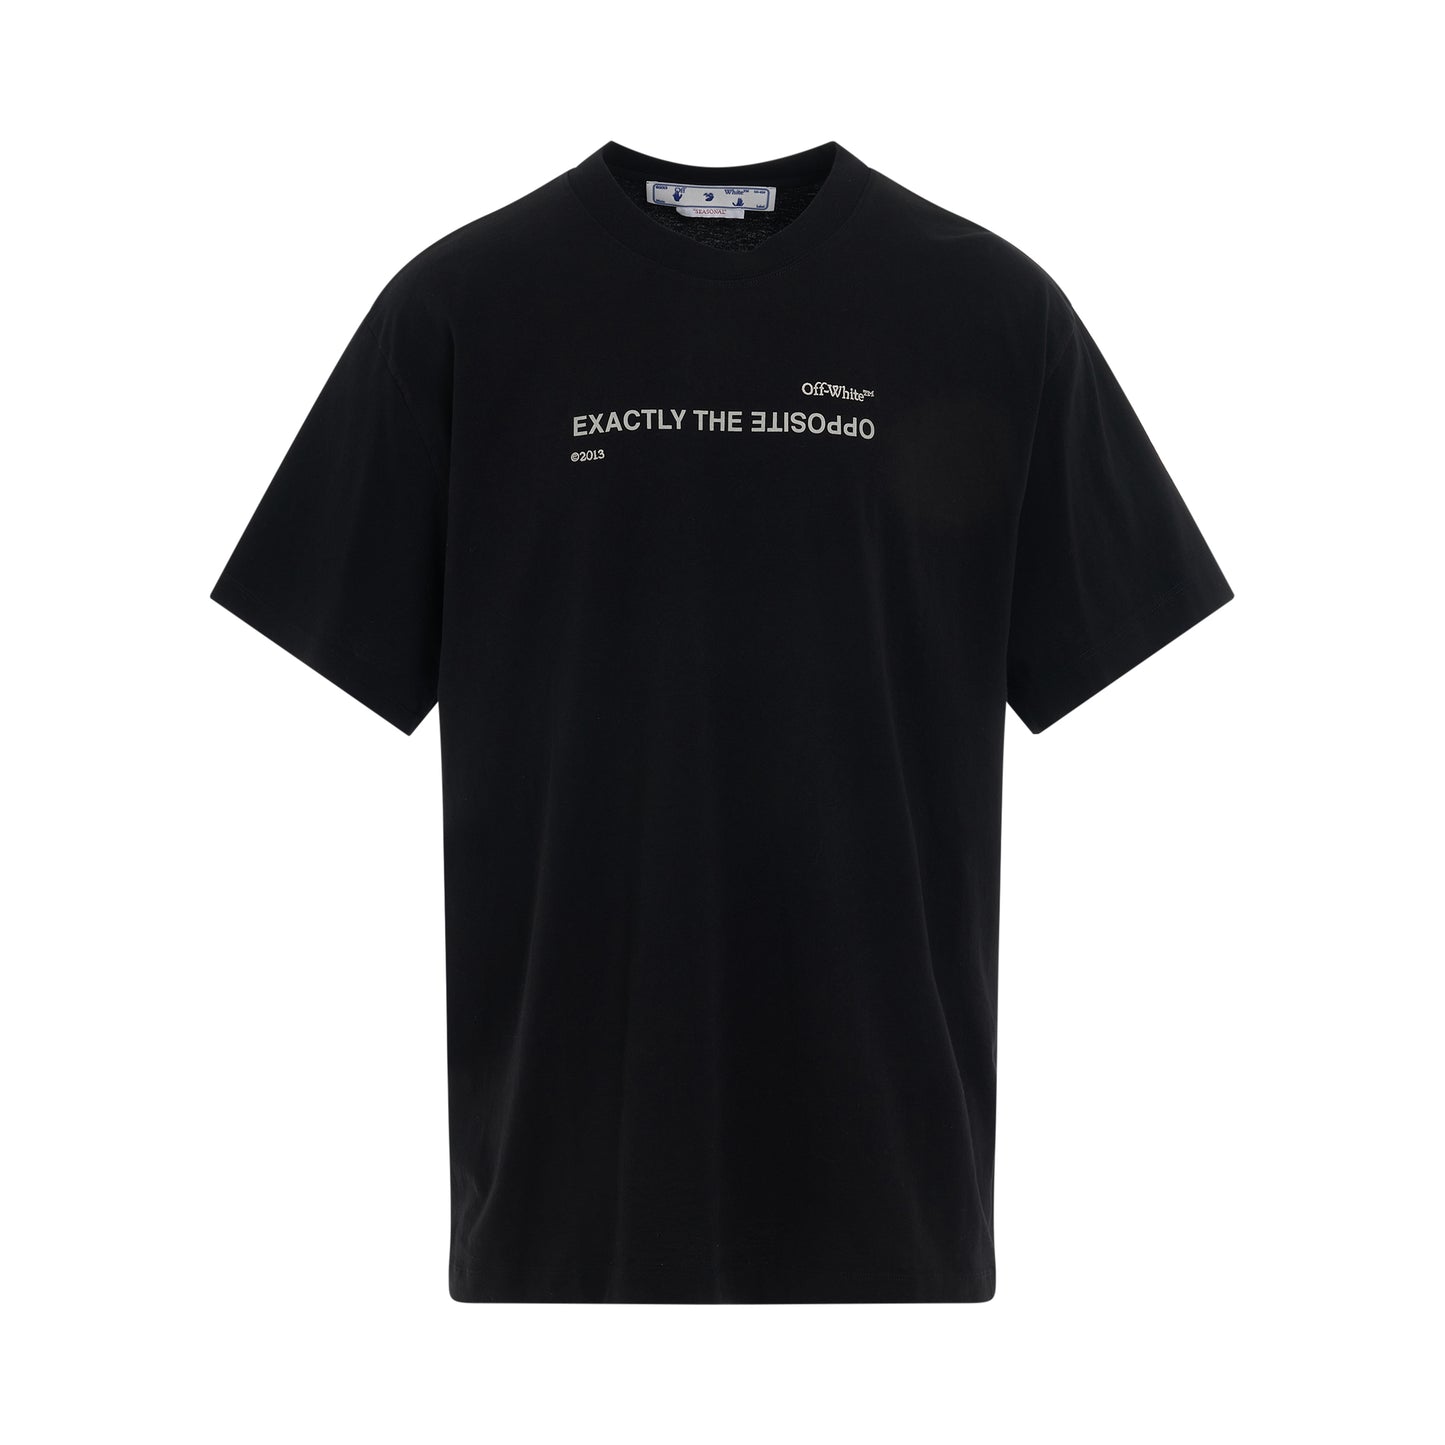 Spiral Opposite T-Shirt in Black/White